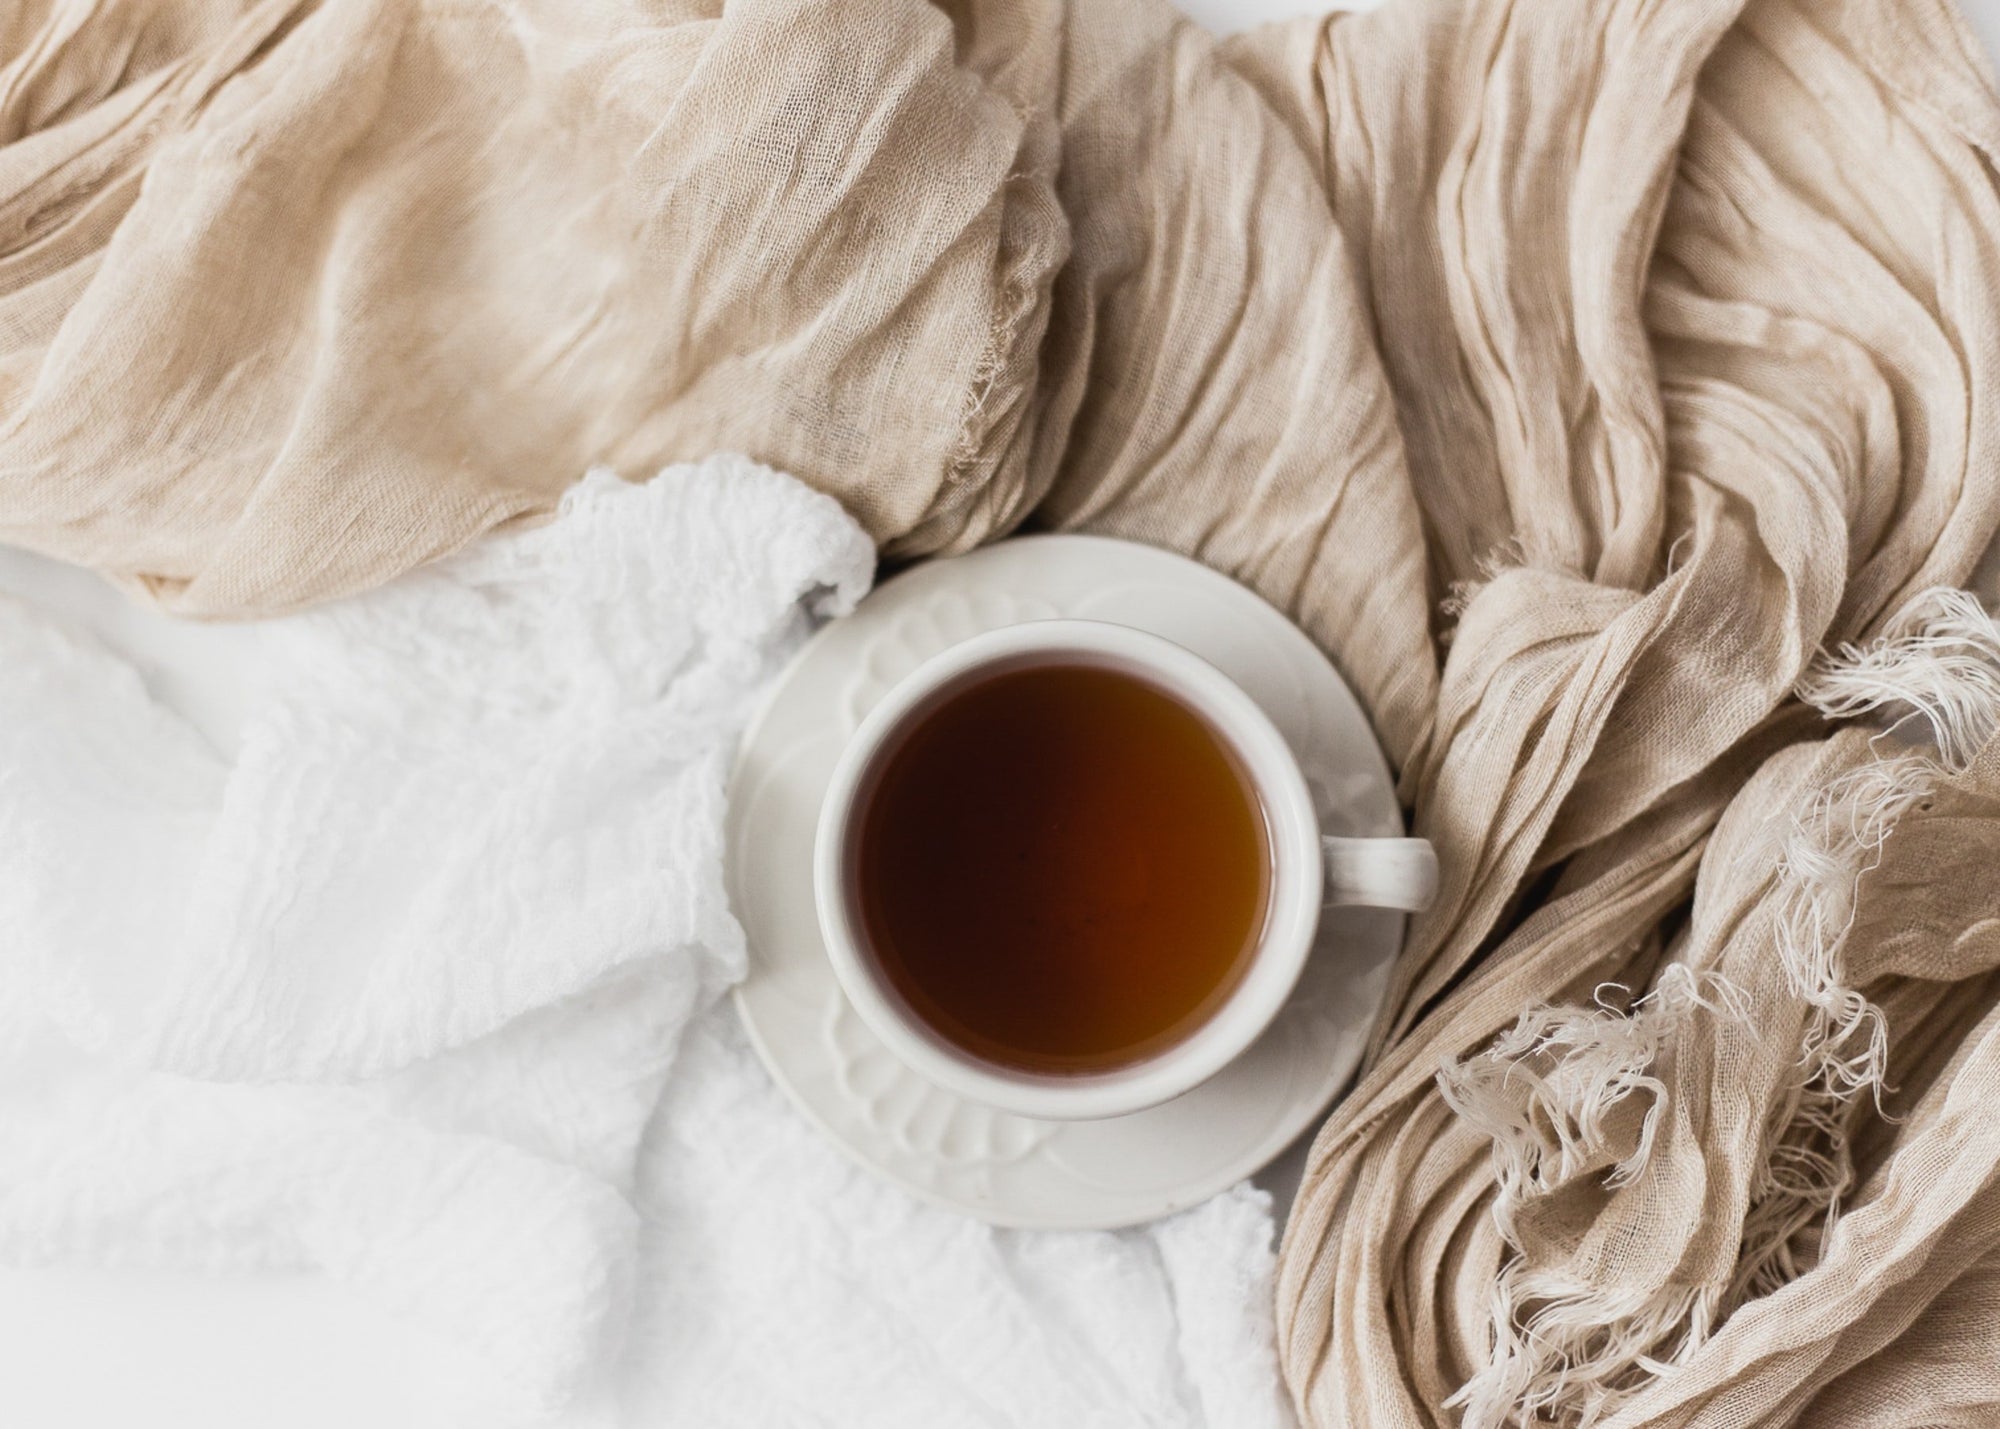 Hot Cocoa Recipe | Fall Self Care Ideas | KYPRIS Beauty & Clean Skincare